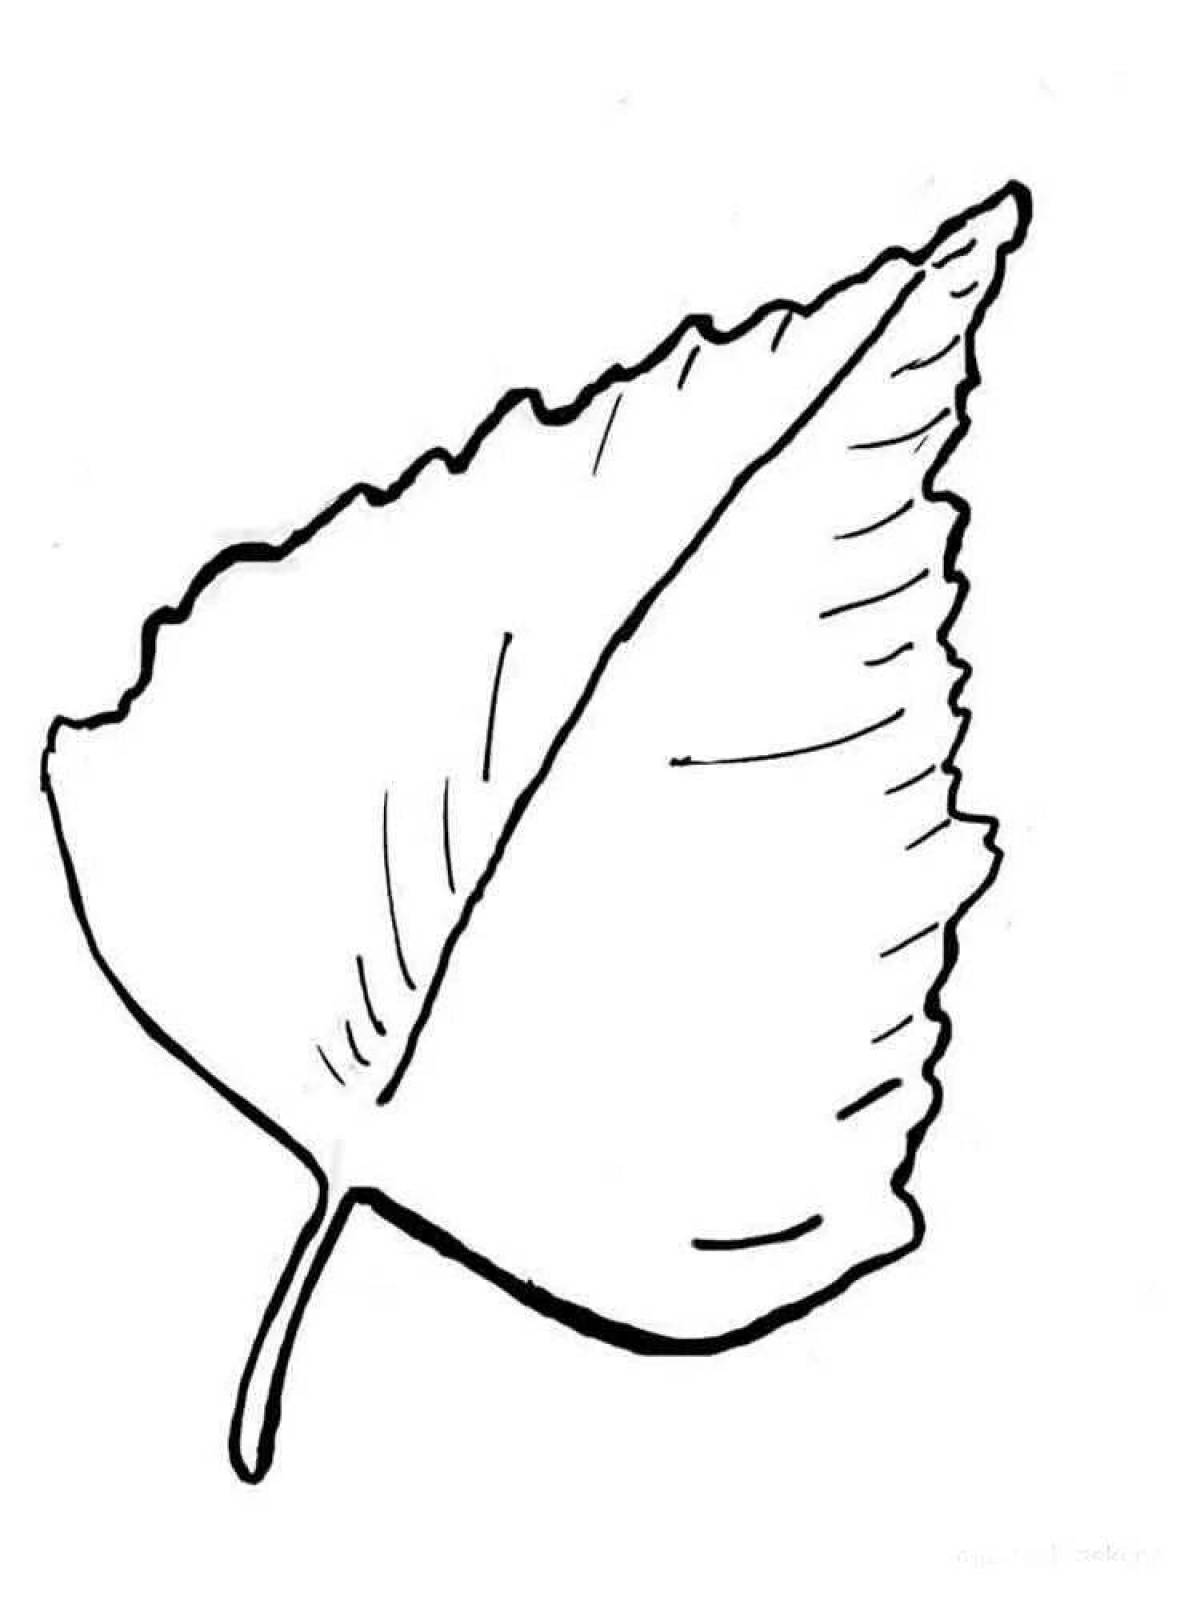 Birch leaf #3